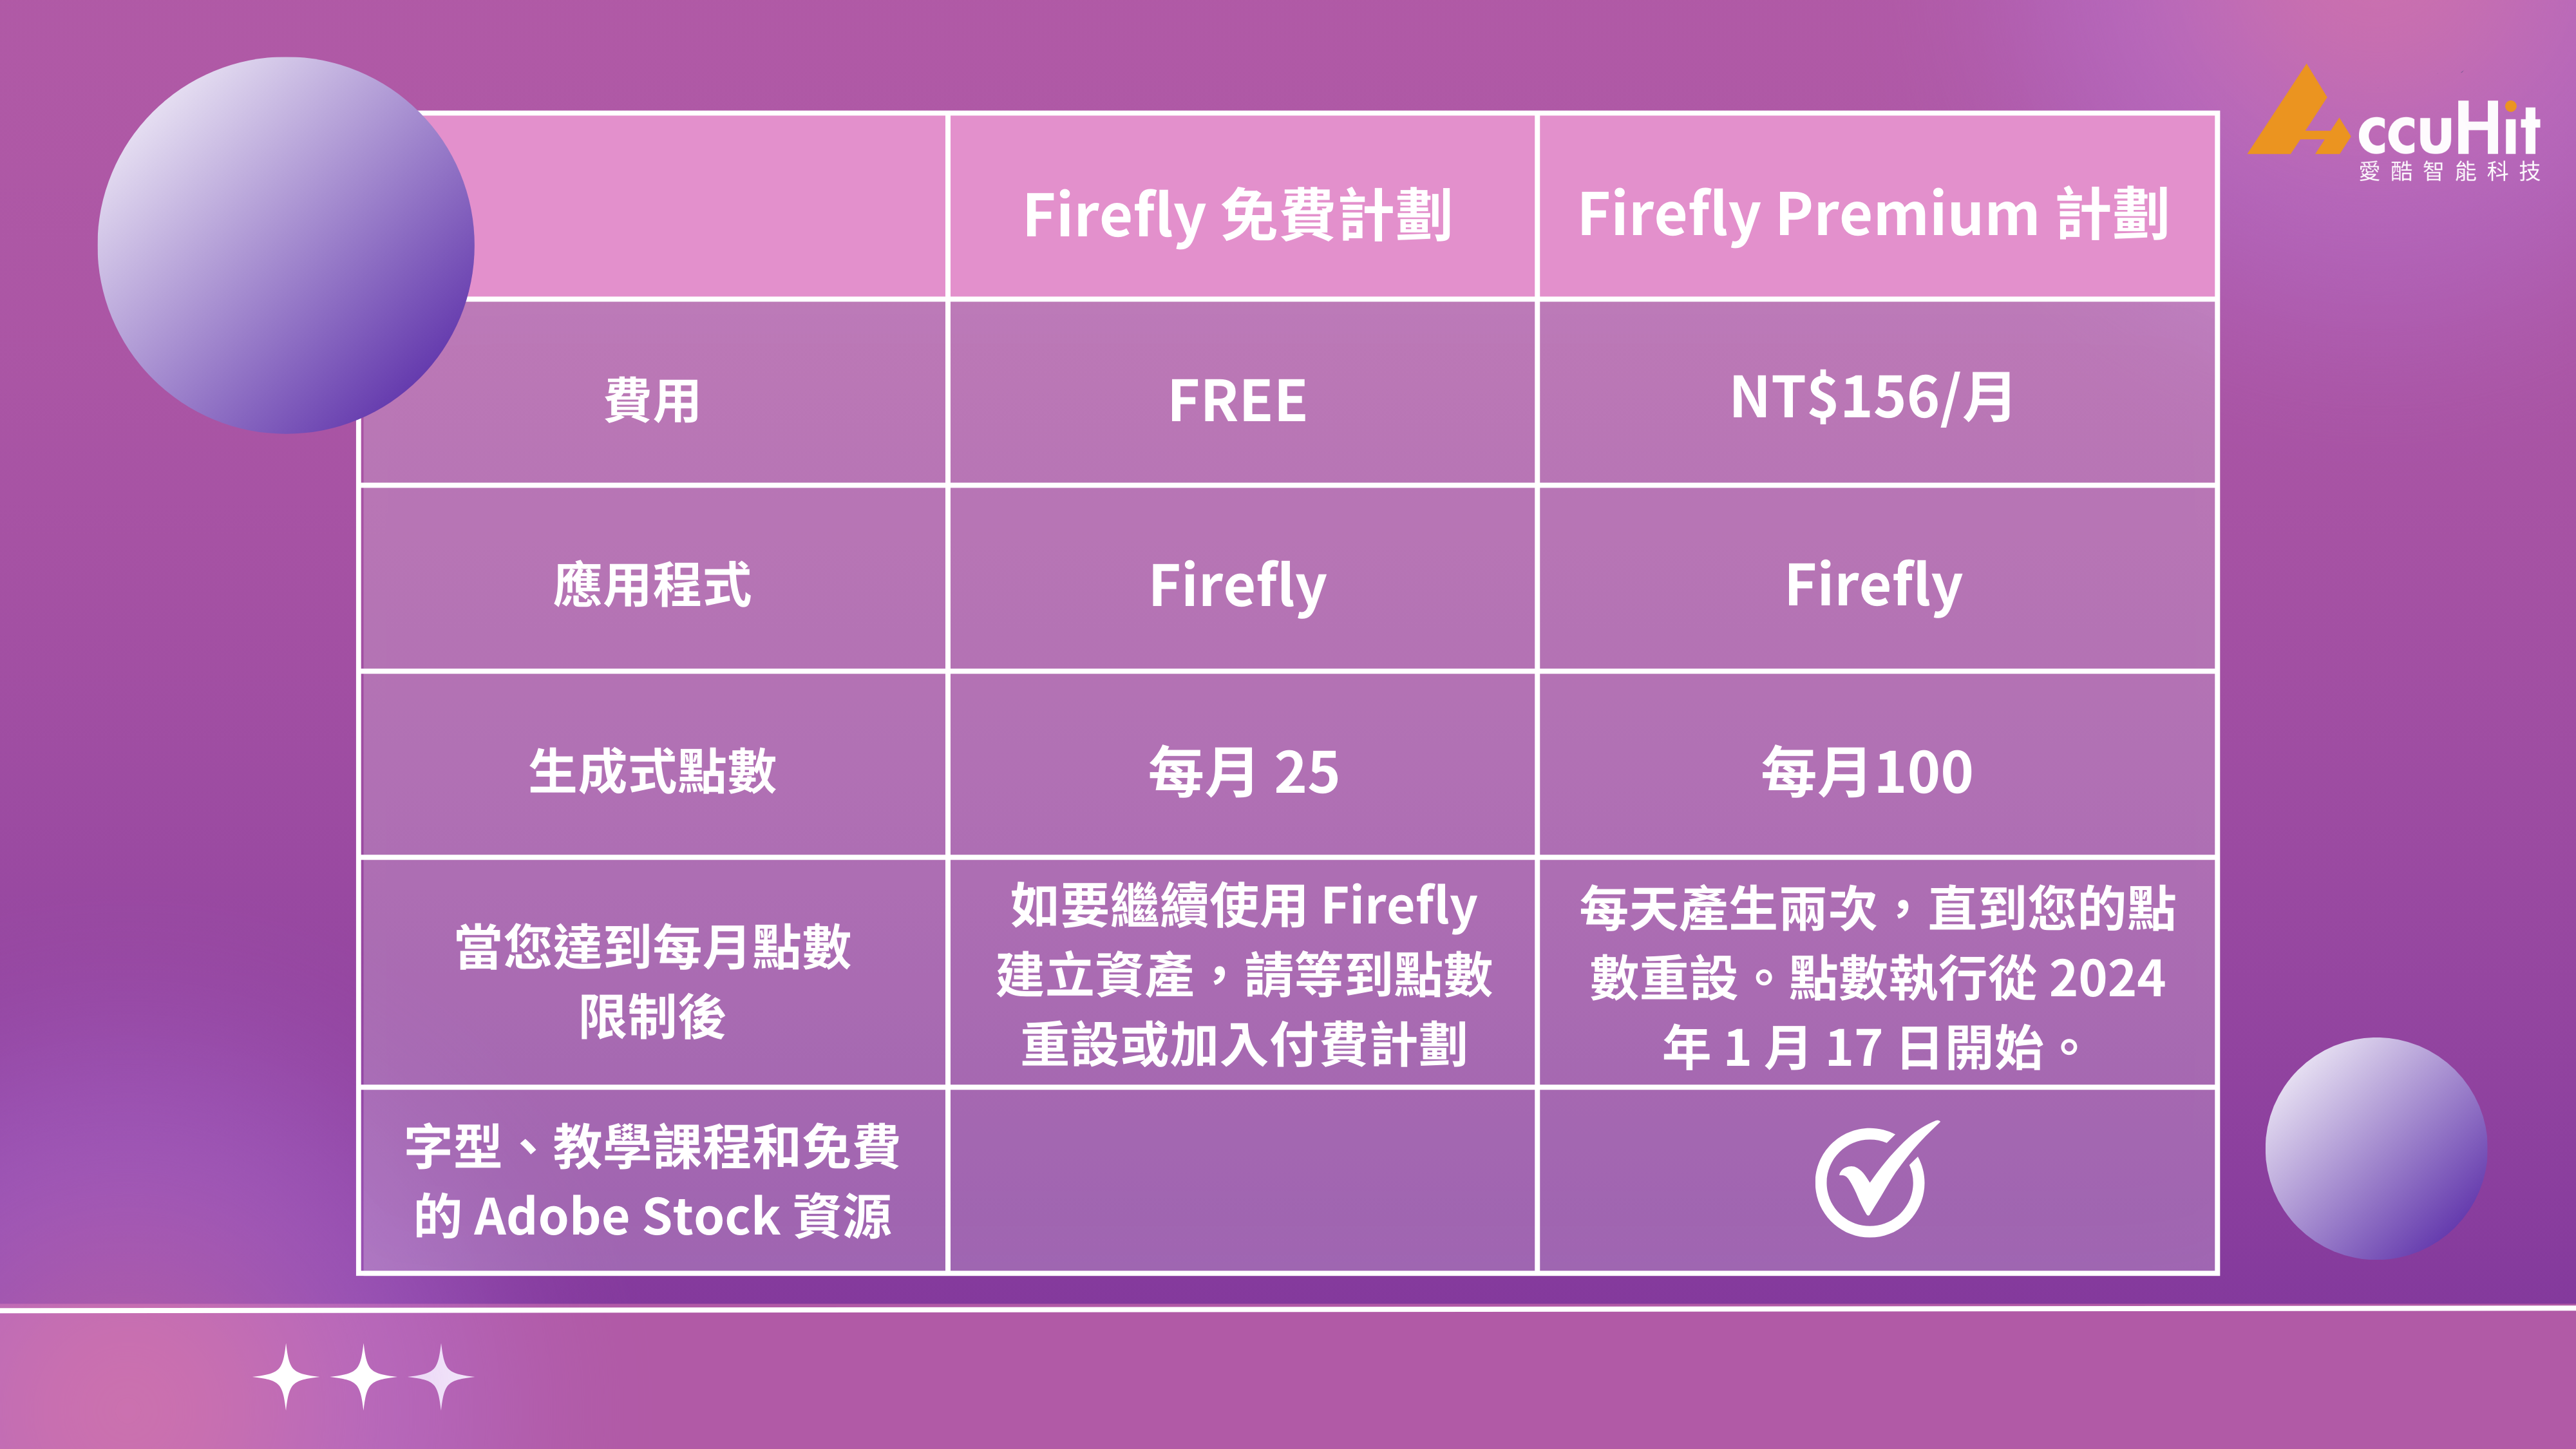 免費版：每月提供25個生成點數。
Premium 付費方案：每月100個生成點數、Adobe Fonts 字體，而且 Firefly 產生的影像不加浮水印。